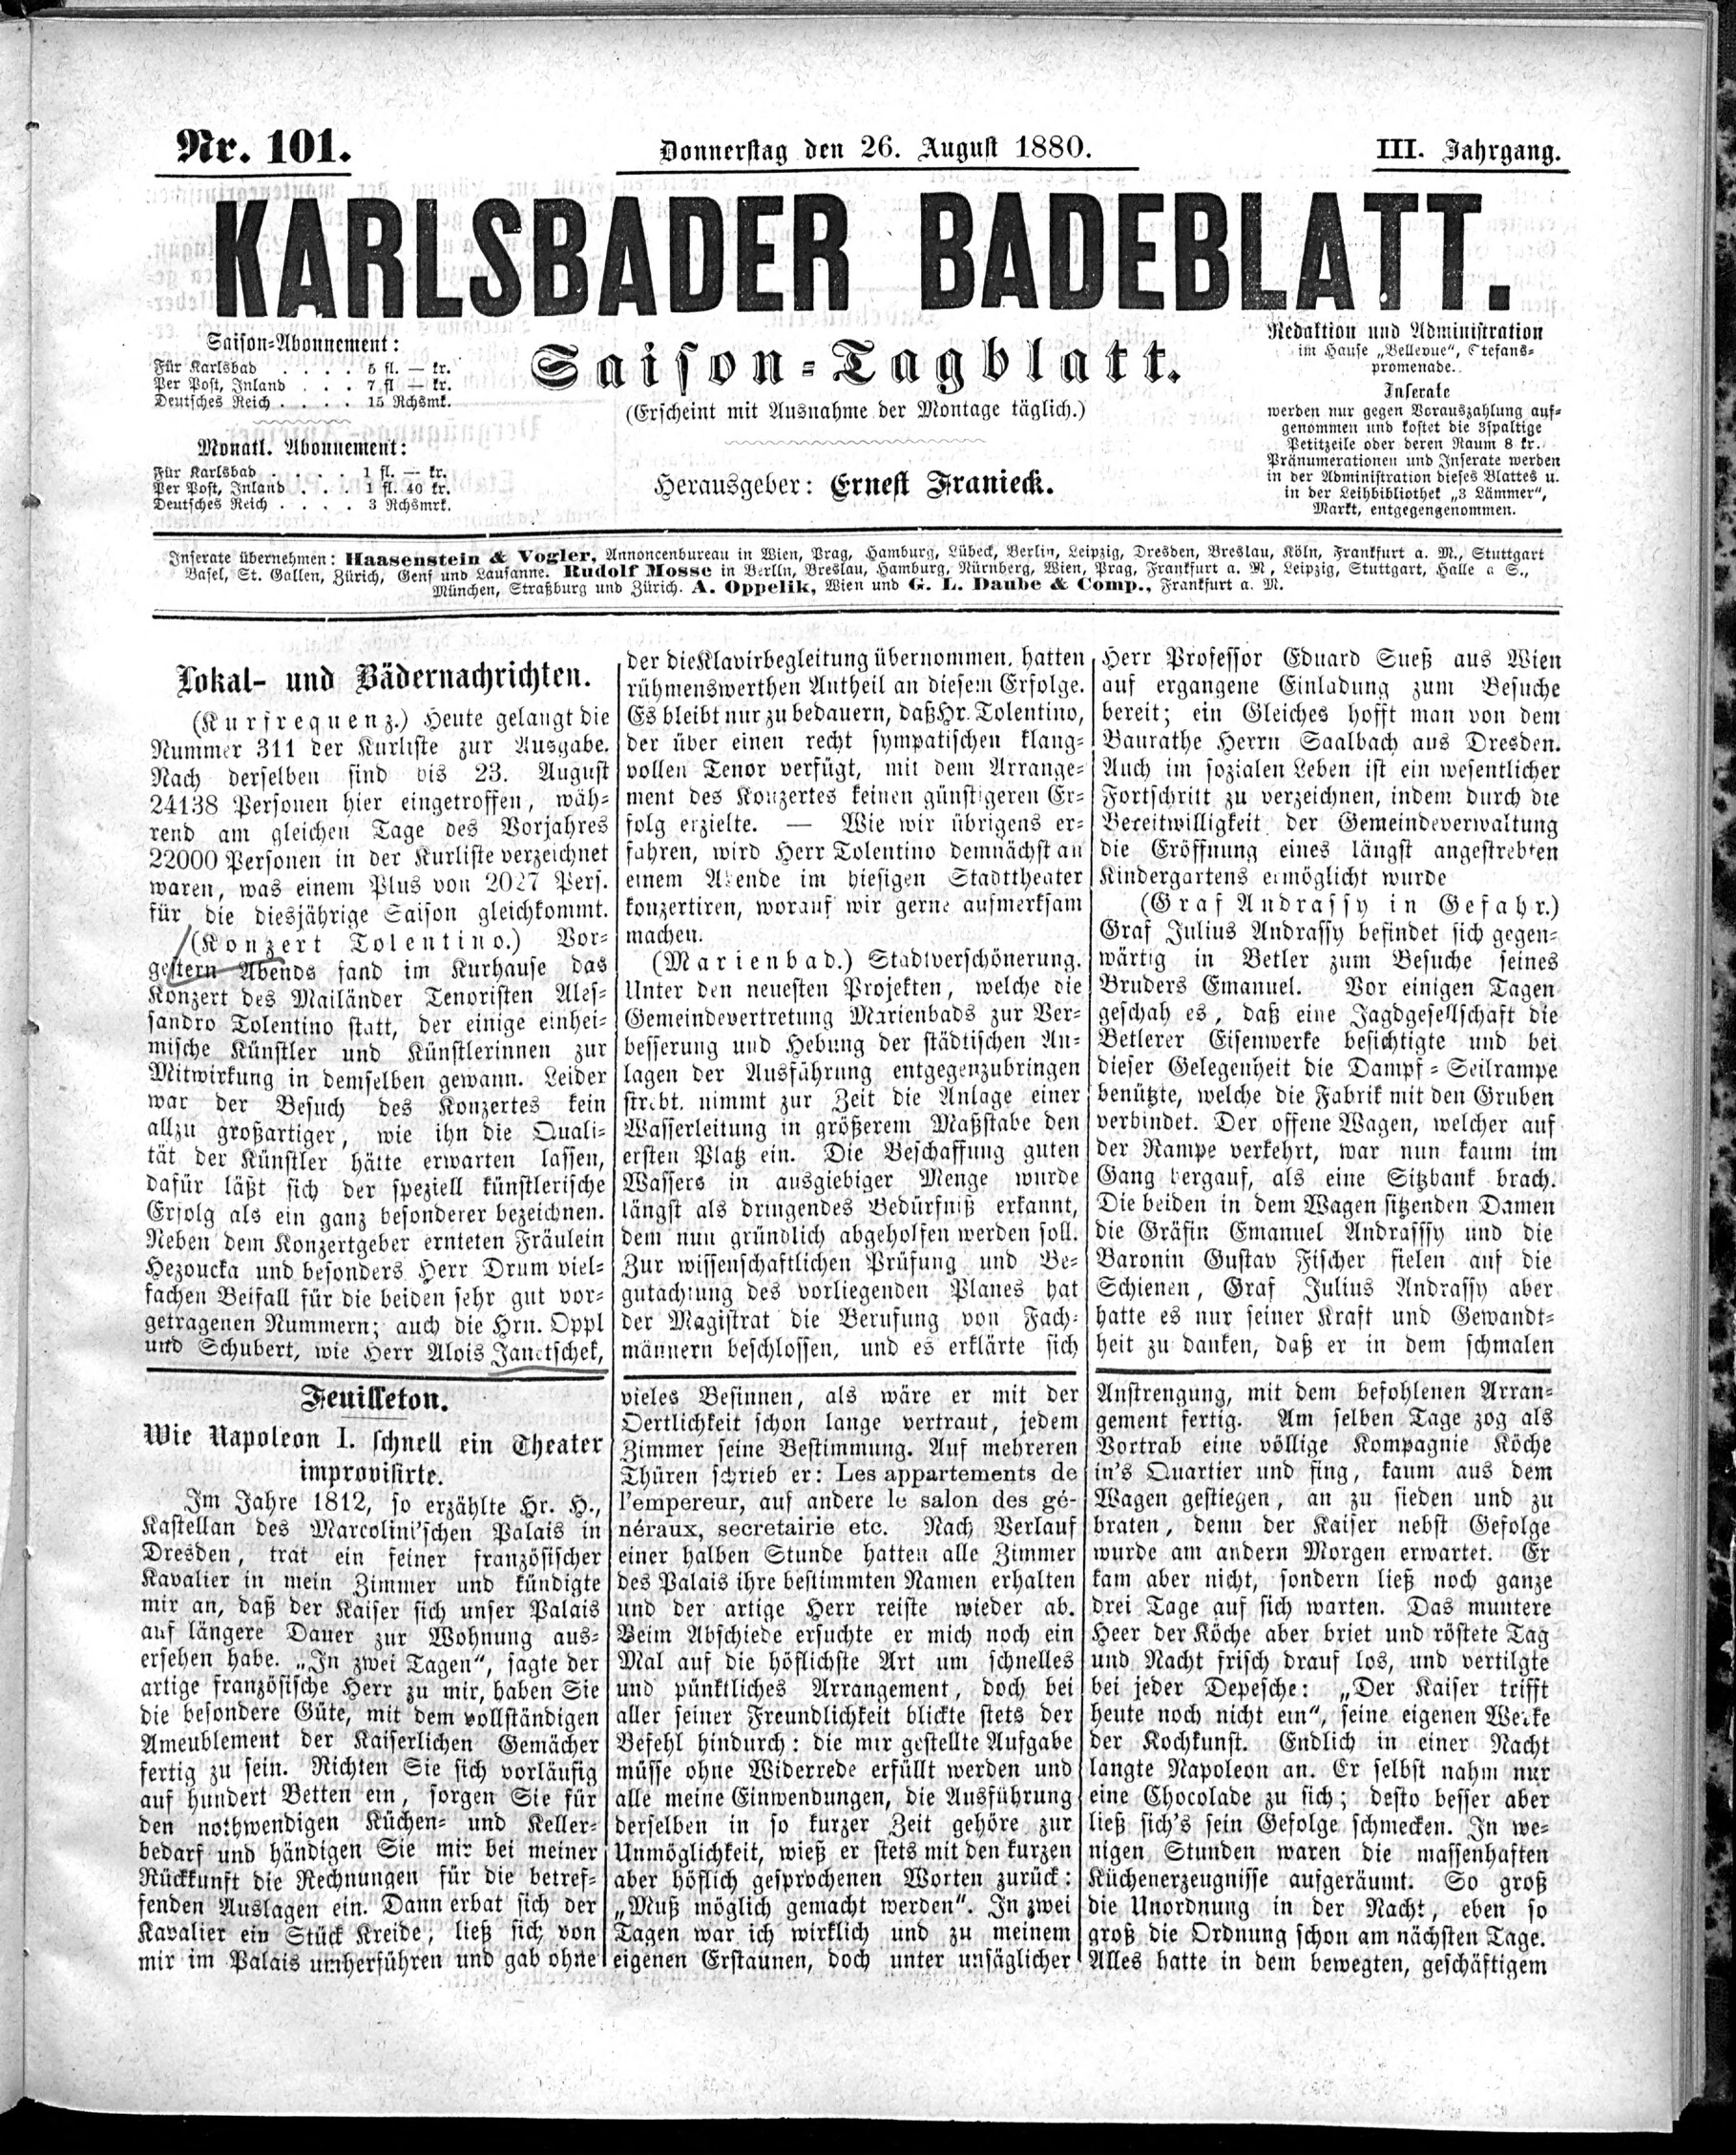 1. karlsbader-badeblatt-1880-08-26-n101_2045